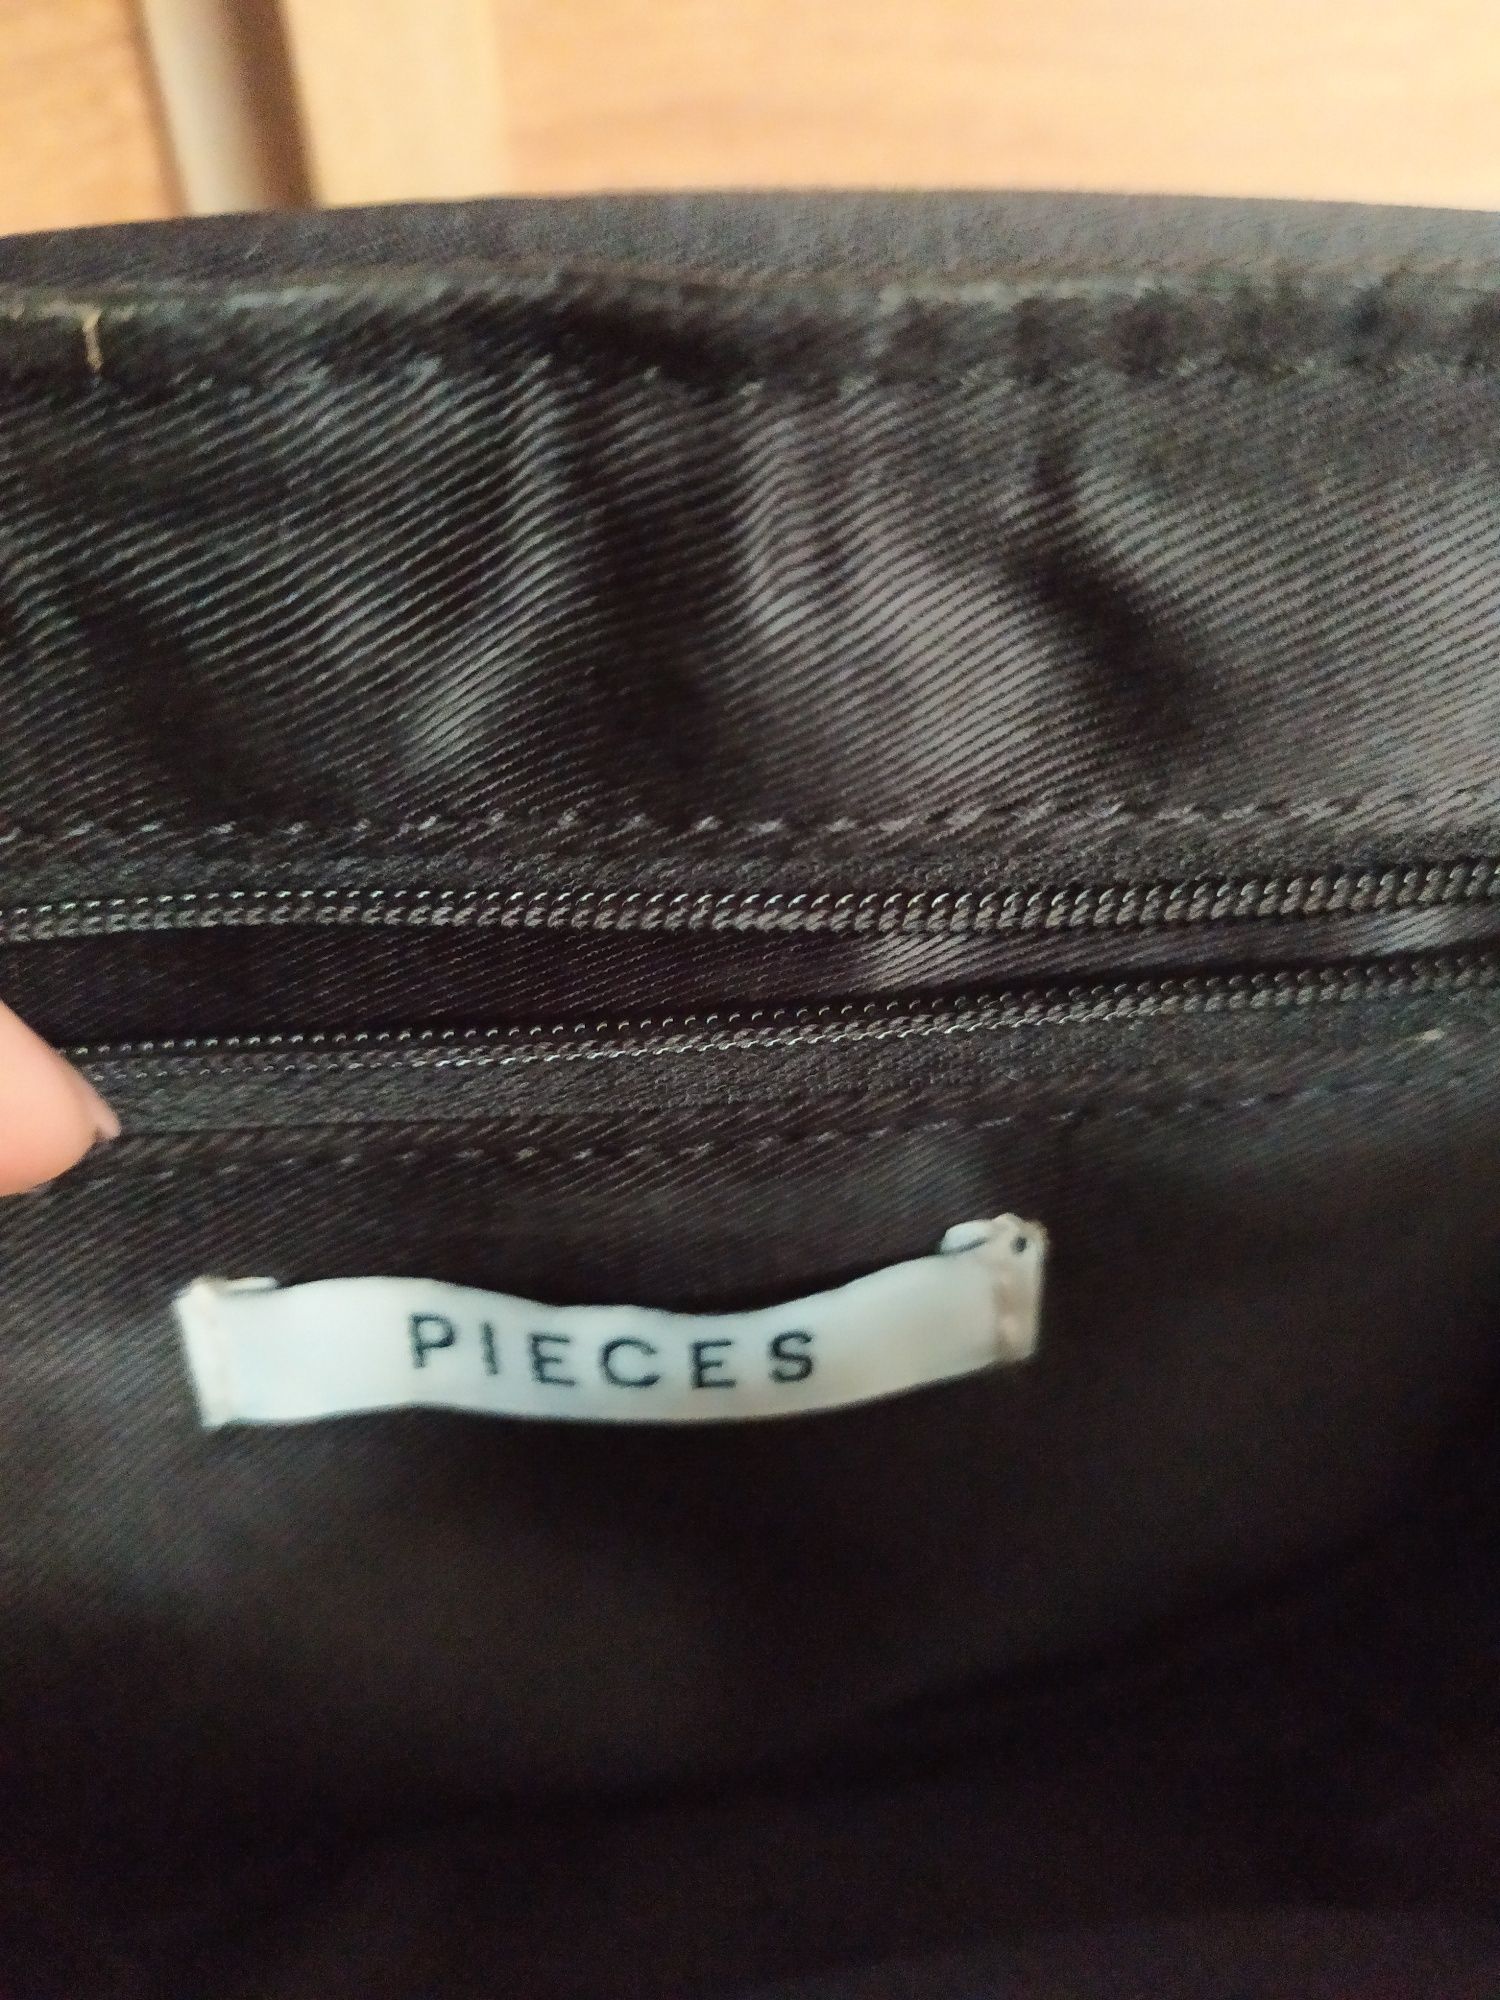 Жіноча сумочка. Pieces.